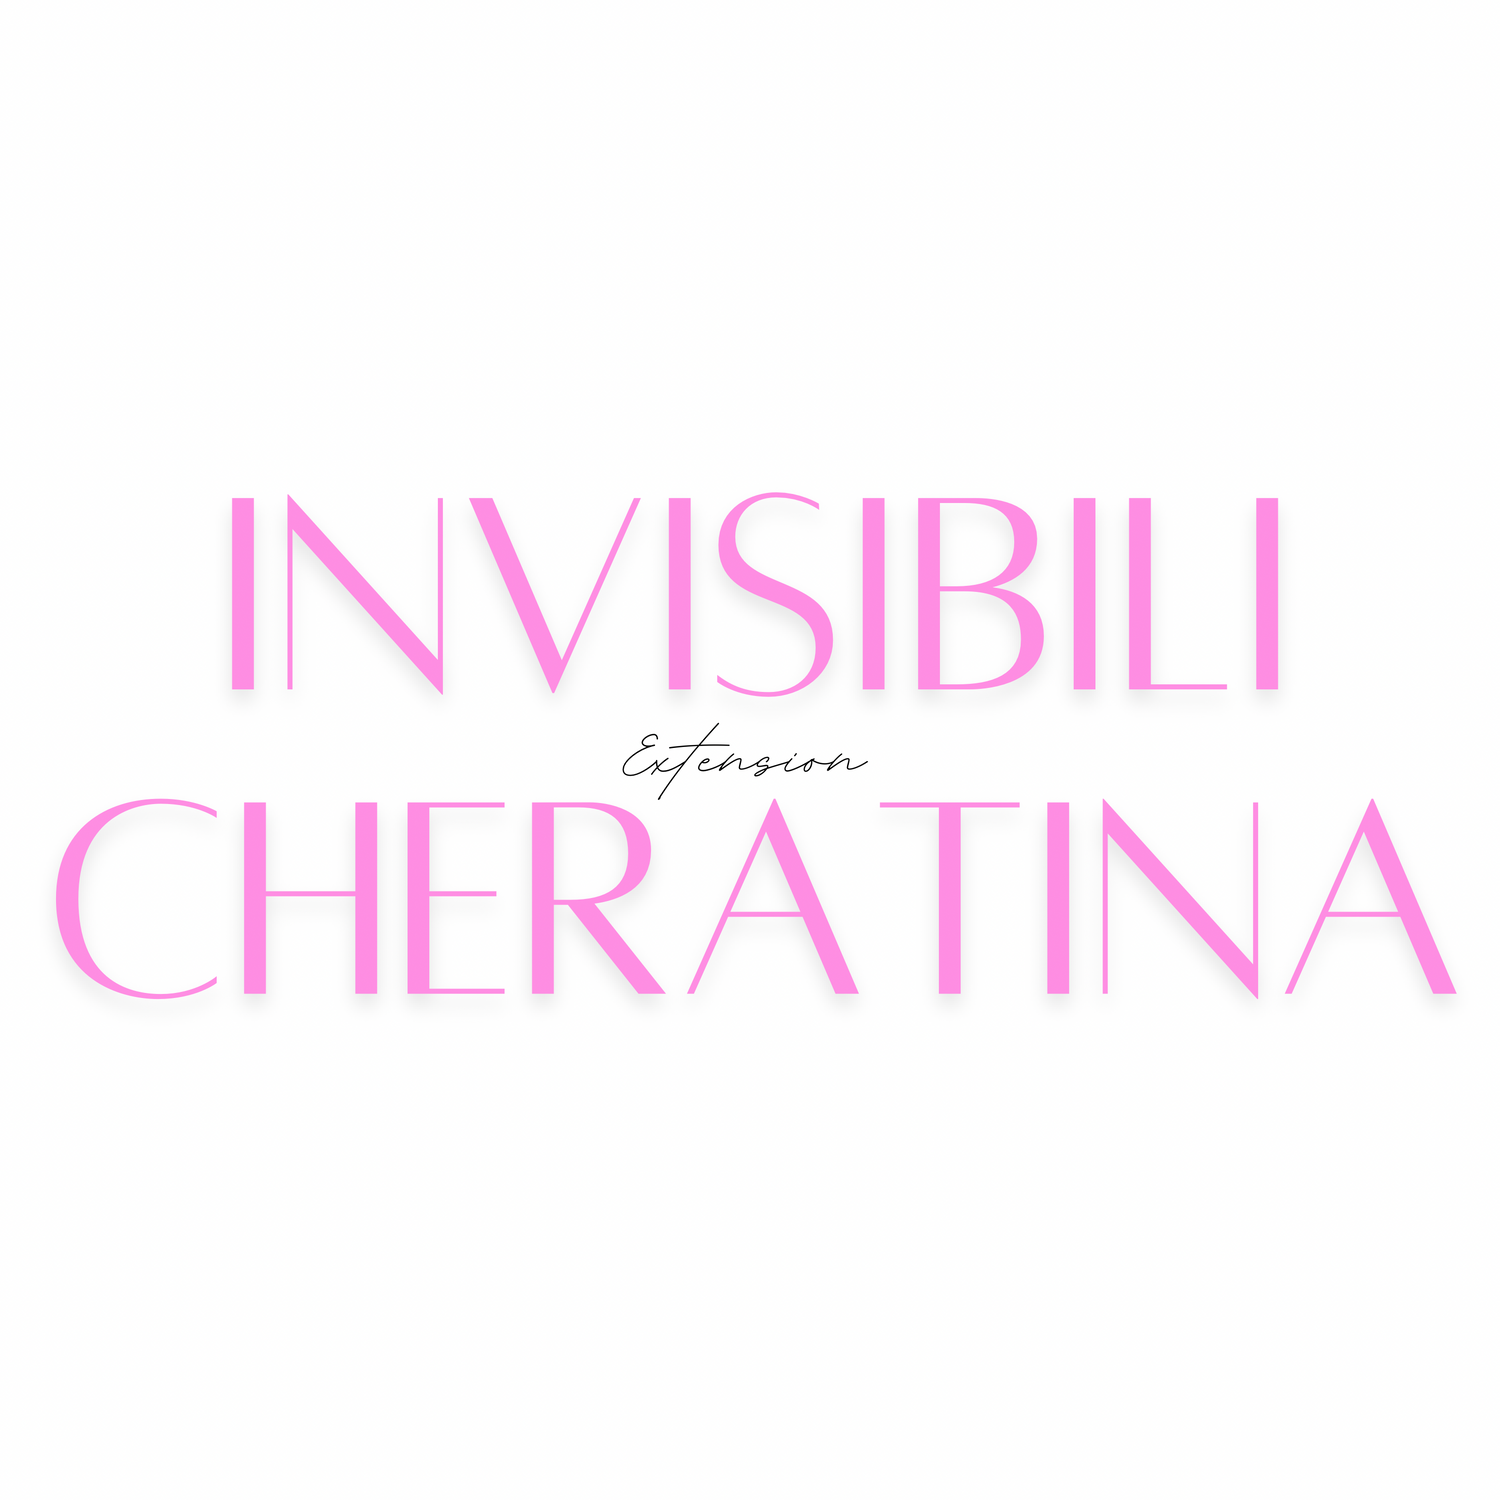 Extension INVISIBILI Cheratina